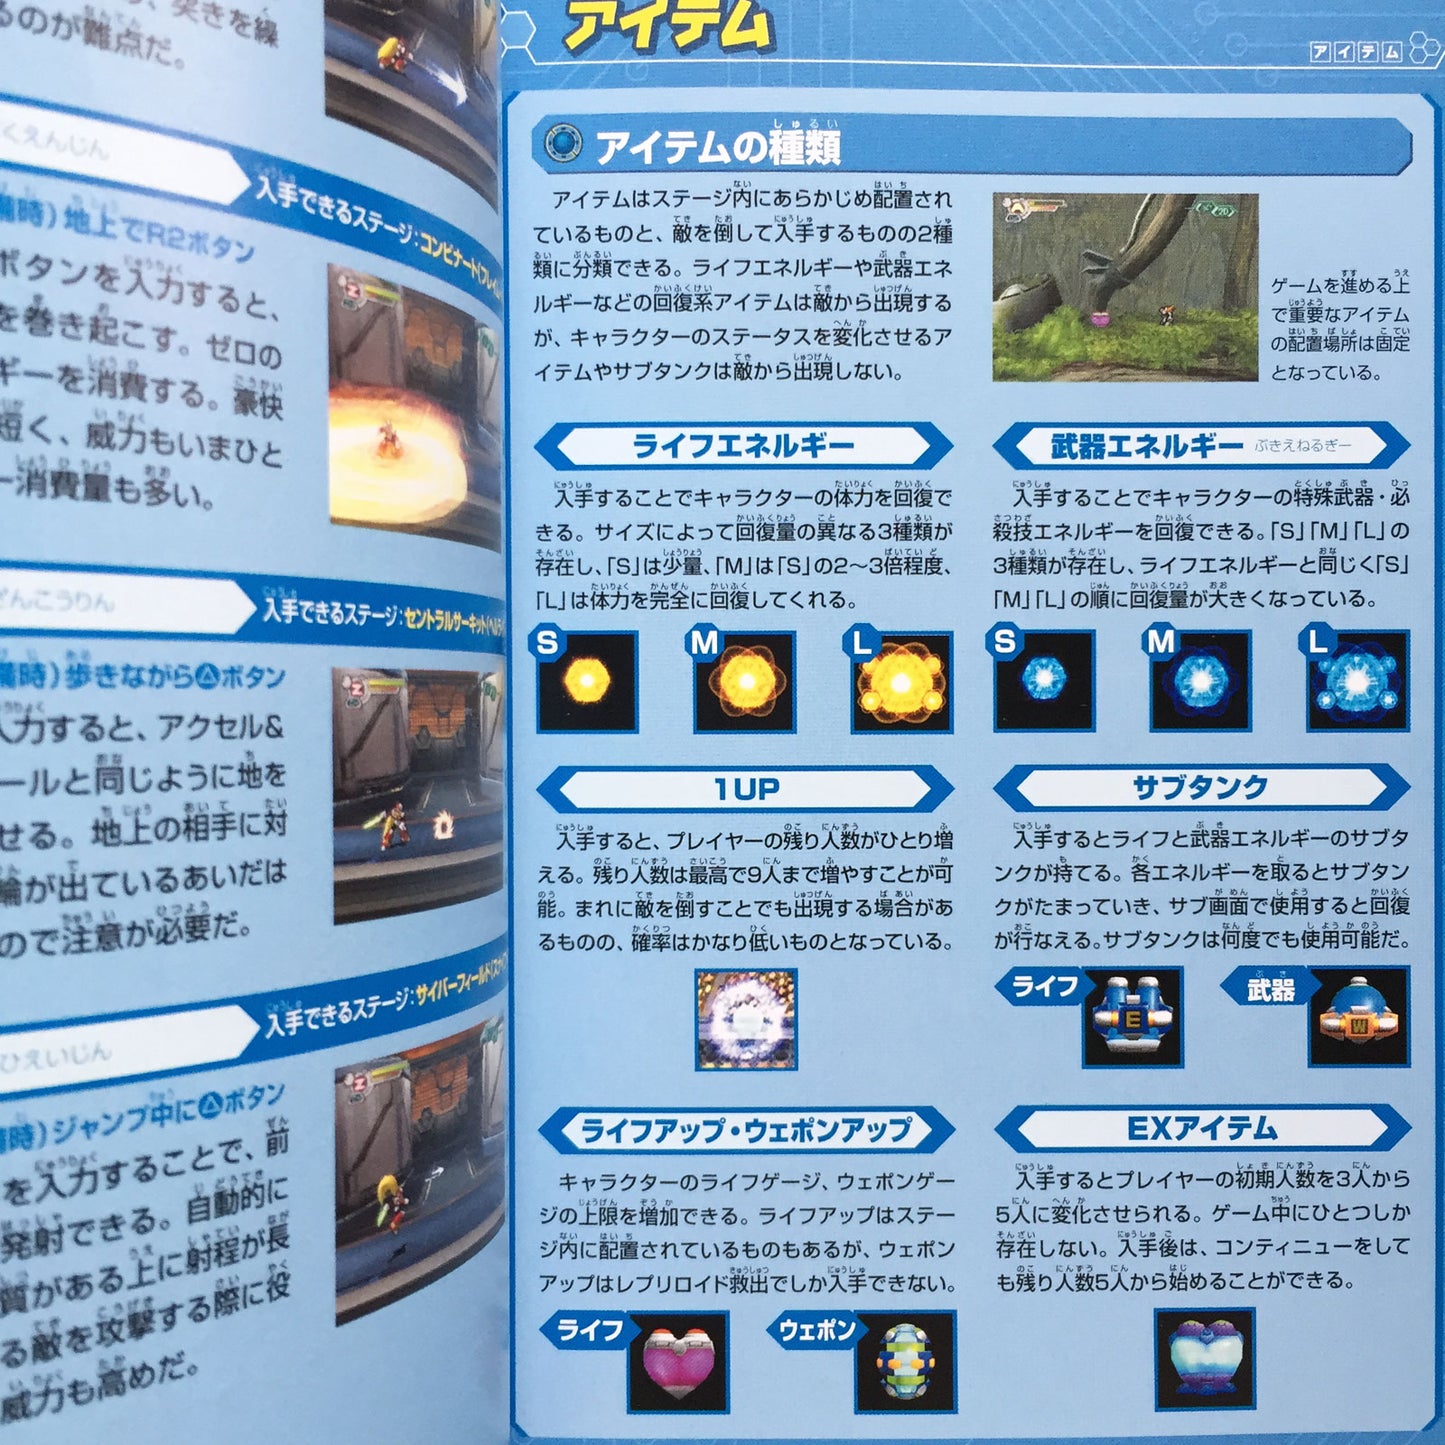 ROCKMAN (Mega Man) X7 Official Guide Book